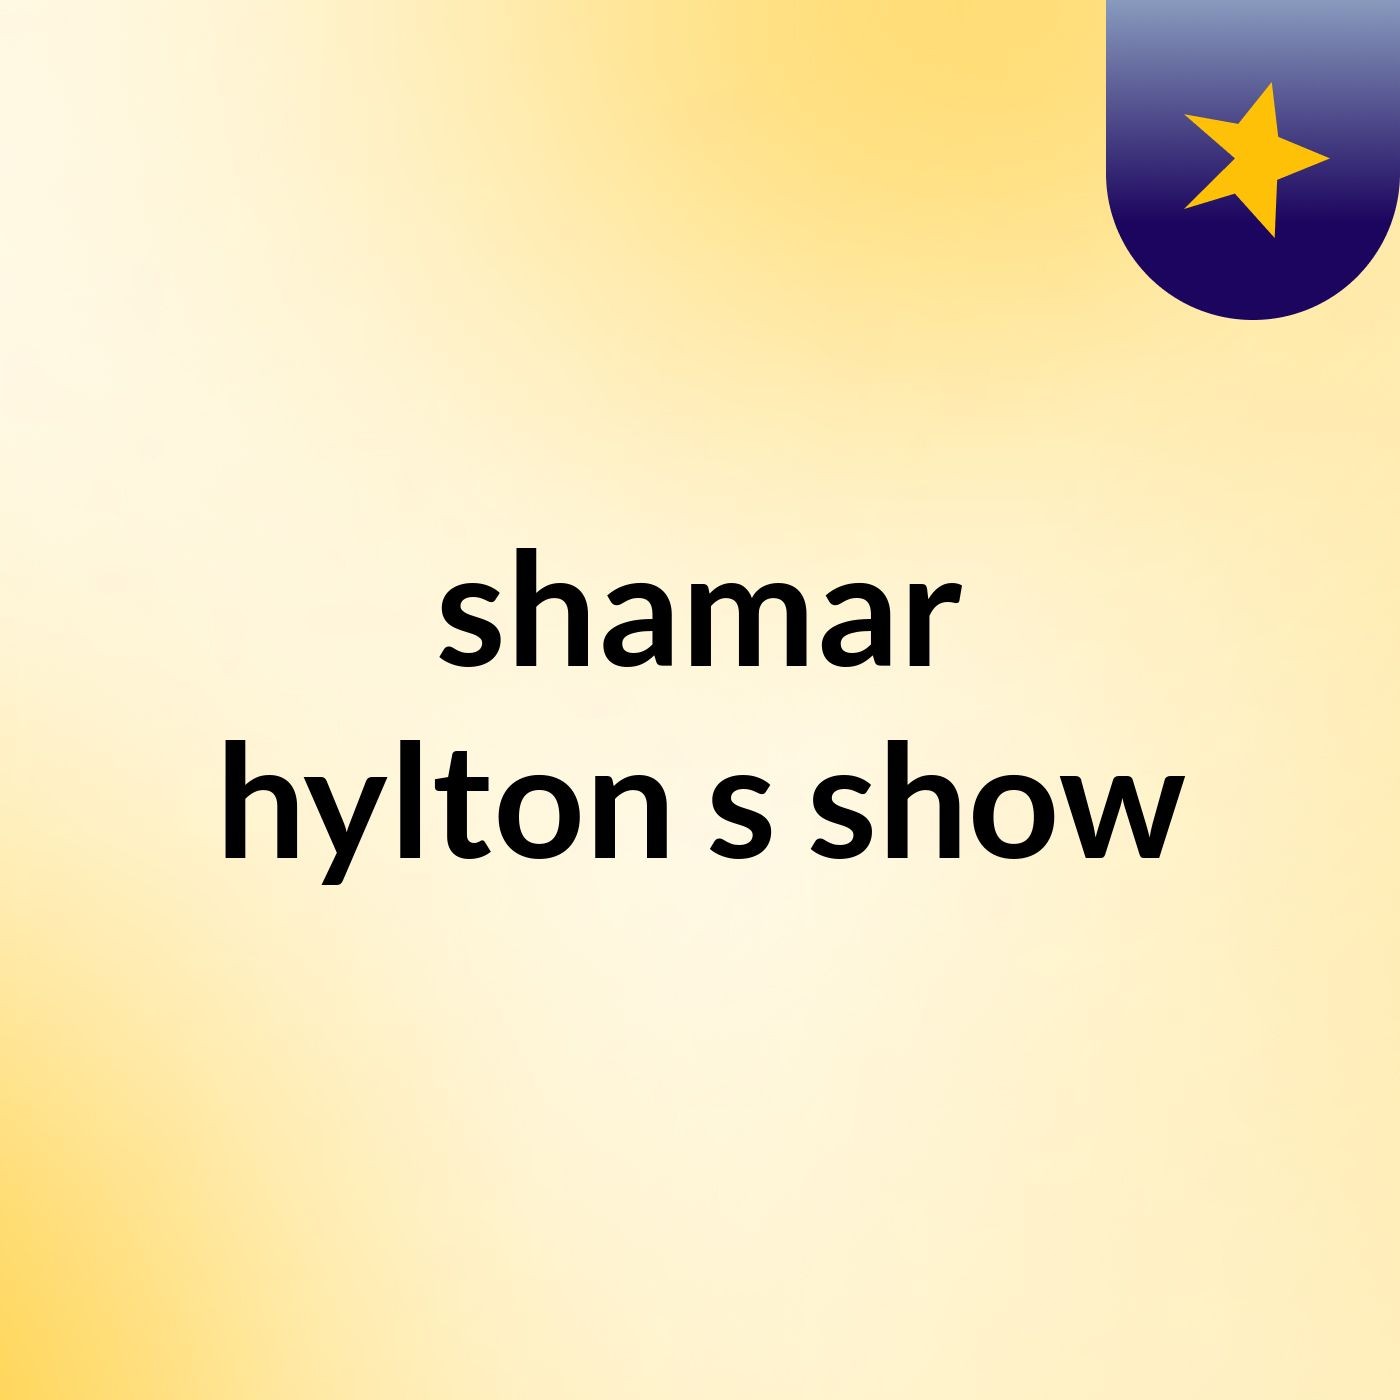 shamar hylton's show